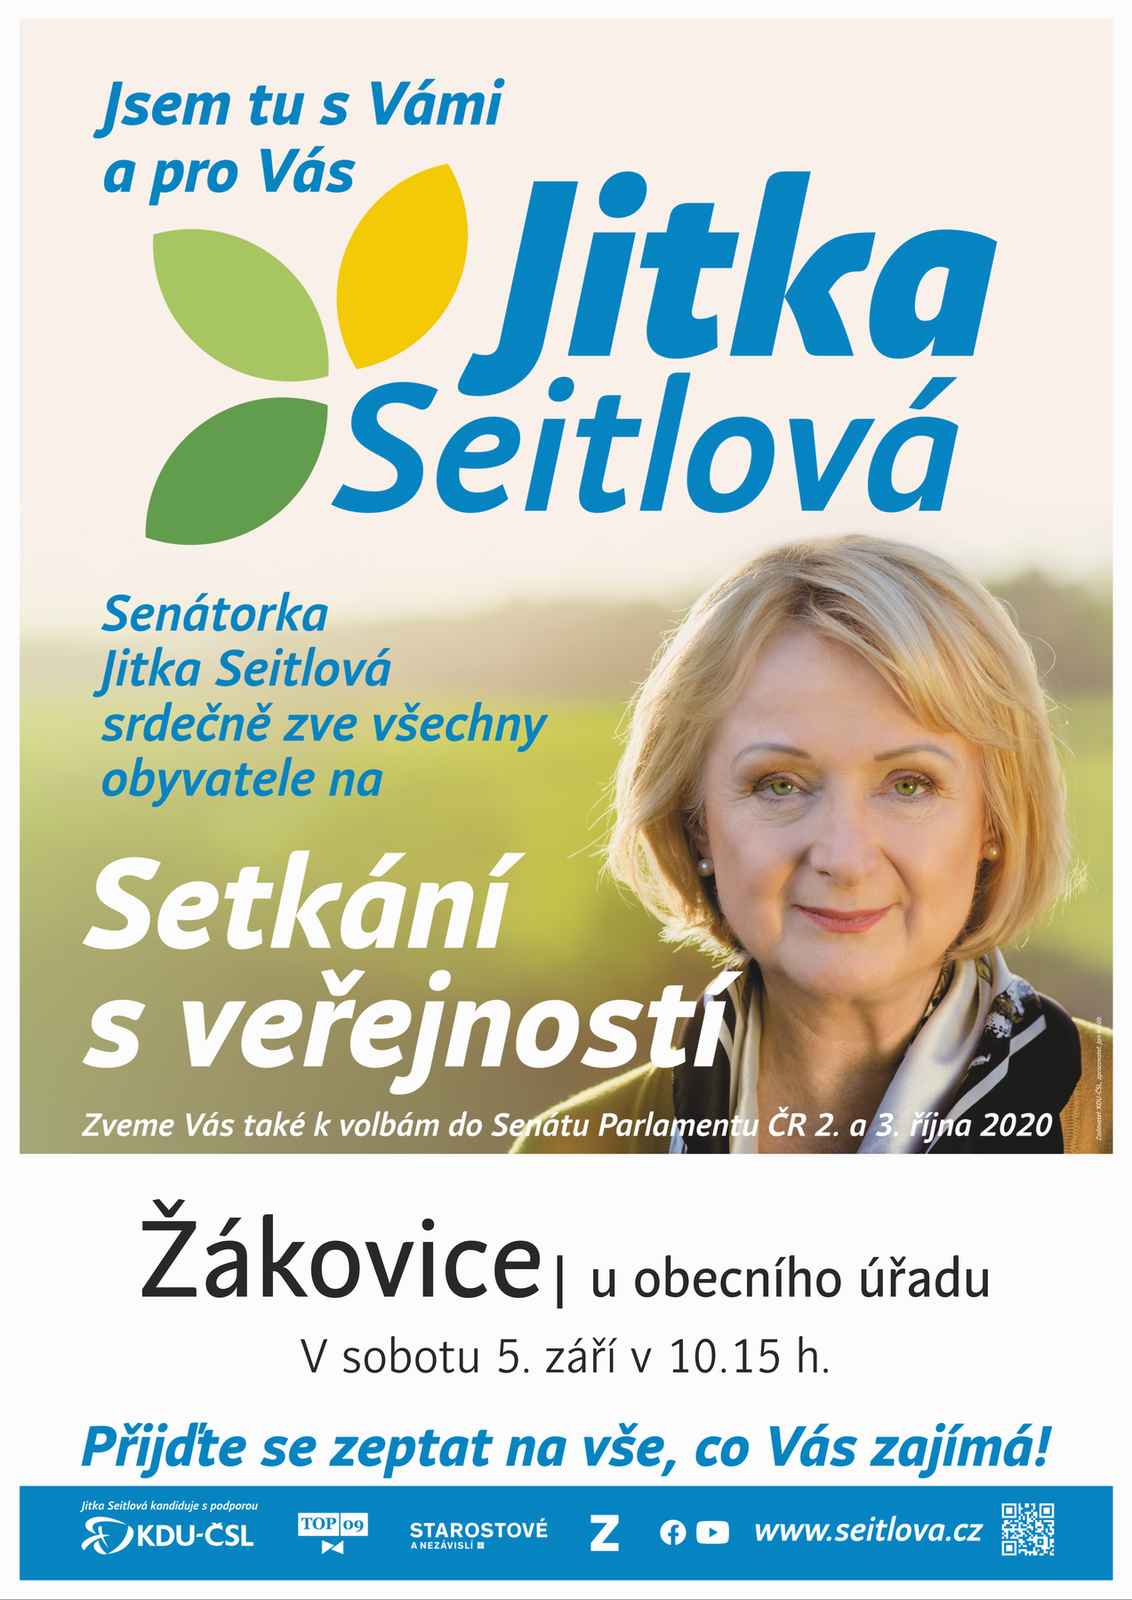 Jitka_Seitlova-Setkani_s_verejnosti-05092020_1015-Zakovice.png